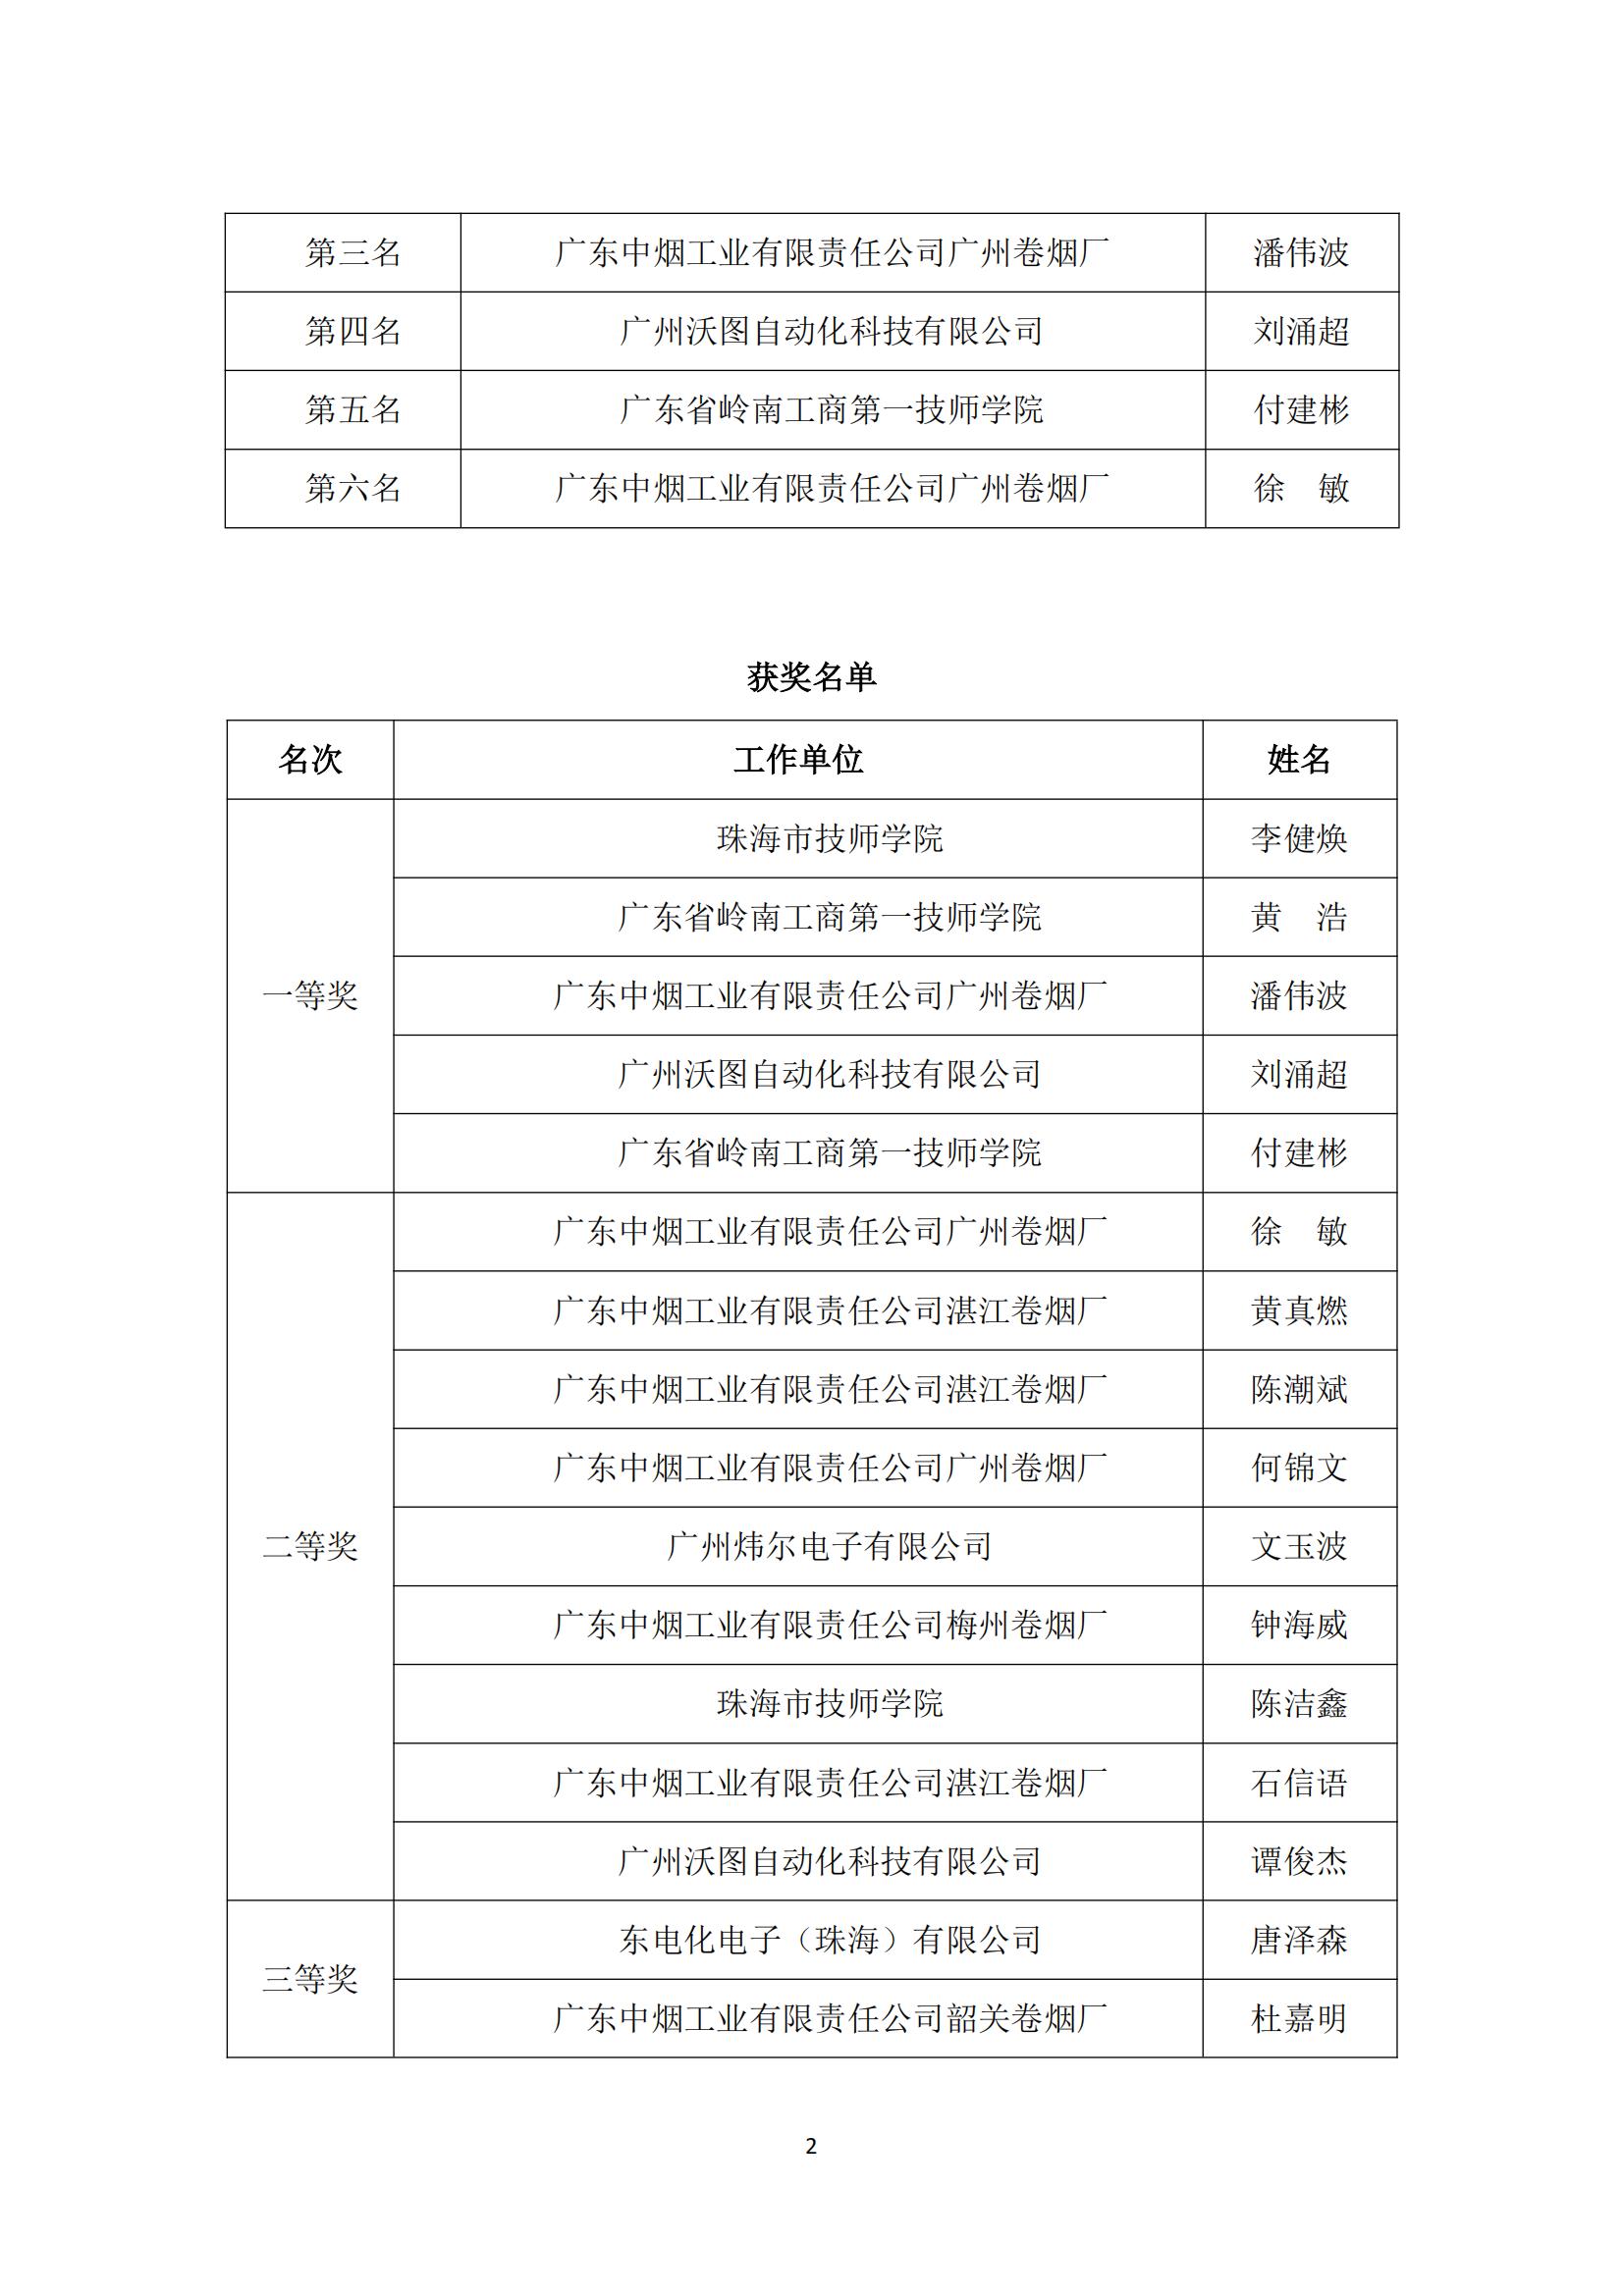 2021年广东省职业技能大赛——机电一体化职业技能竞赛获奖名单公布_01.jpg